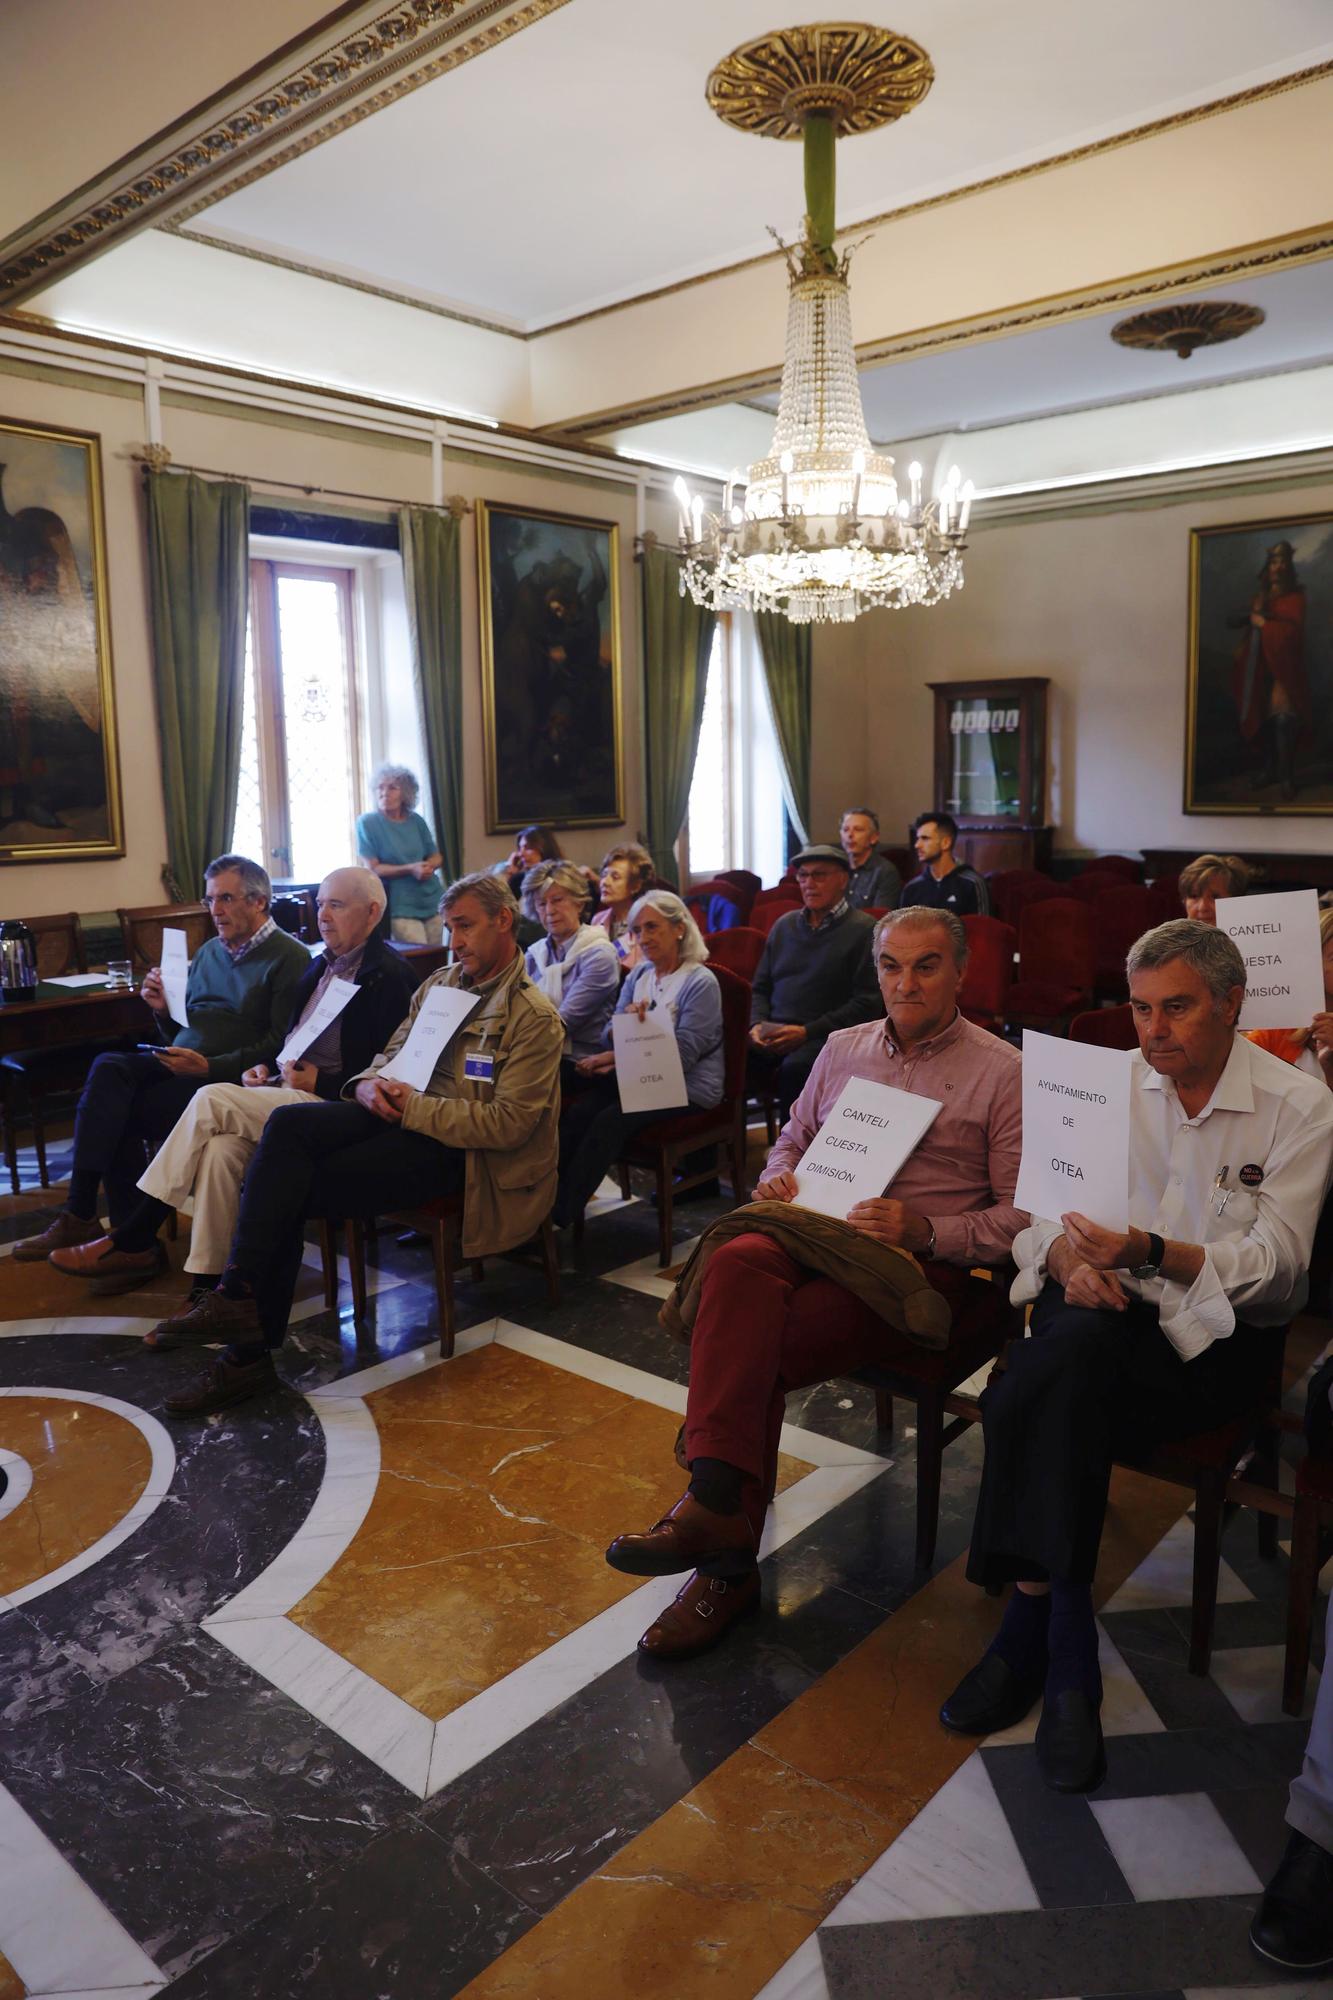 EN IMÁGENES: Pleno municipal en Oviedo con protestas de los vecinos por las terrazas del Antiguo